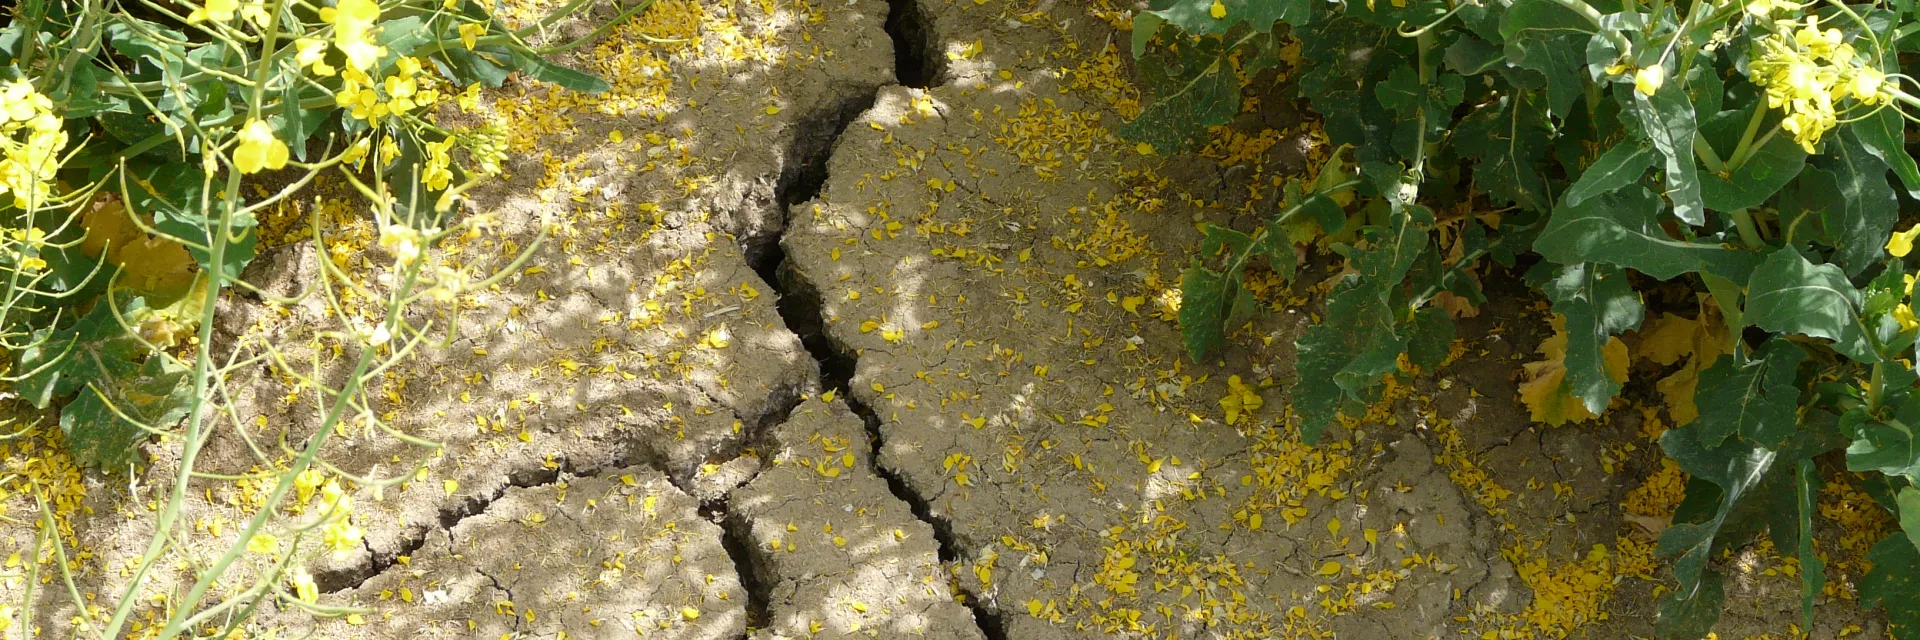 Trockener hellbrauner Boden mit tiefen Rissen, Hintergrund Rapspflanzen